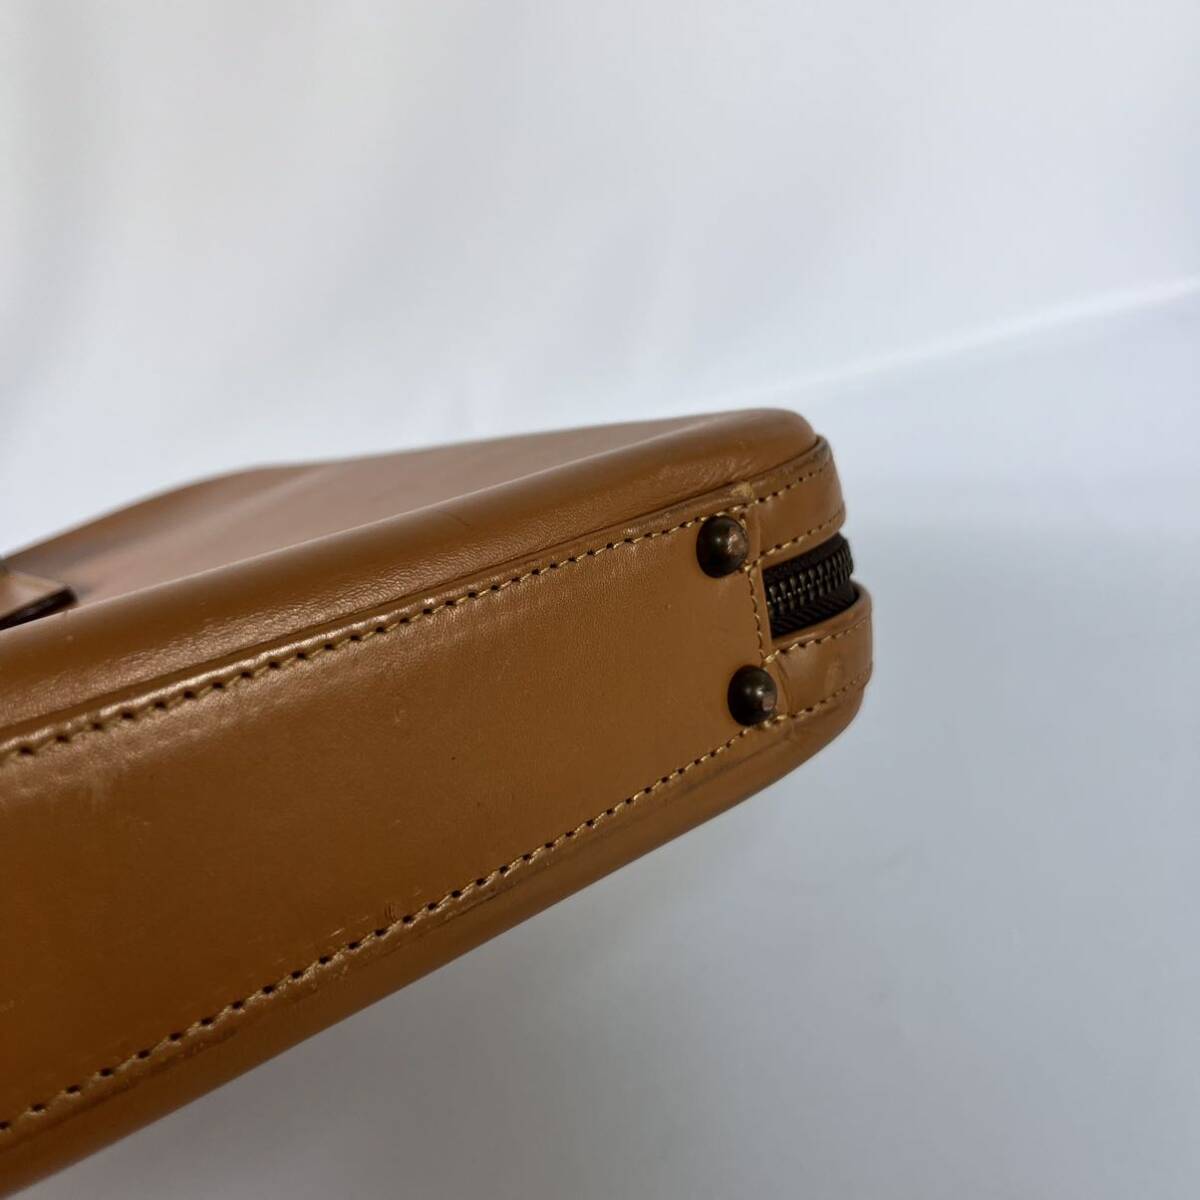 土屋鞄製造所 ビジネスバッグ ブリーフケース ベージュ 革 レザー A4サイズ収納可能 本革 レザーブリーフケース ツチヤカバンの画像7